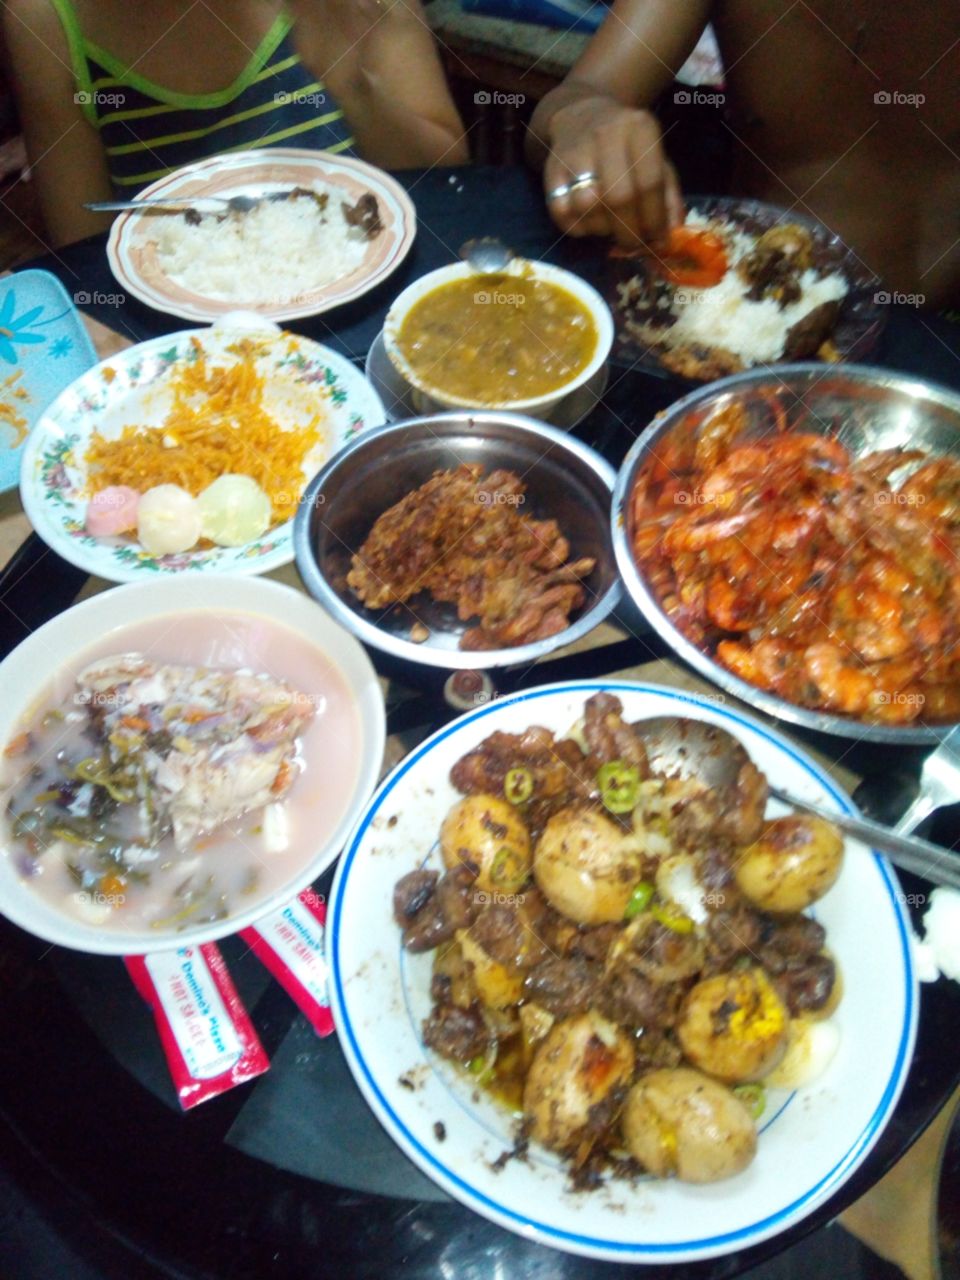 My Filipino lunch.✌️👍